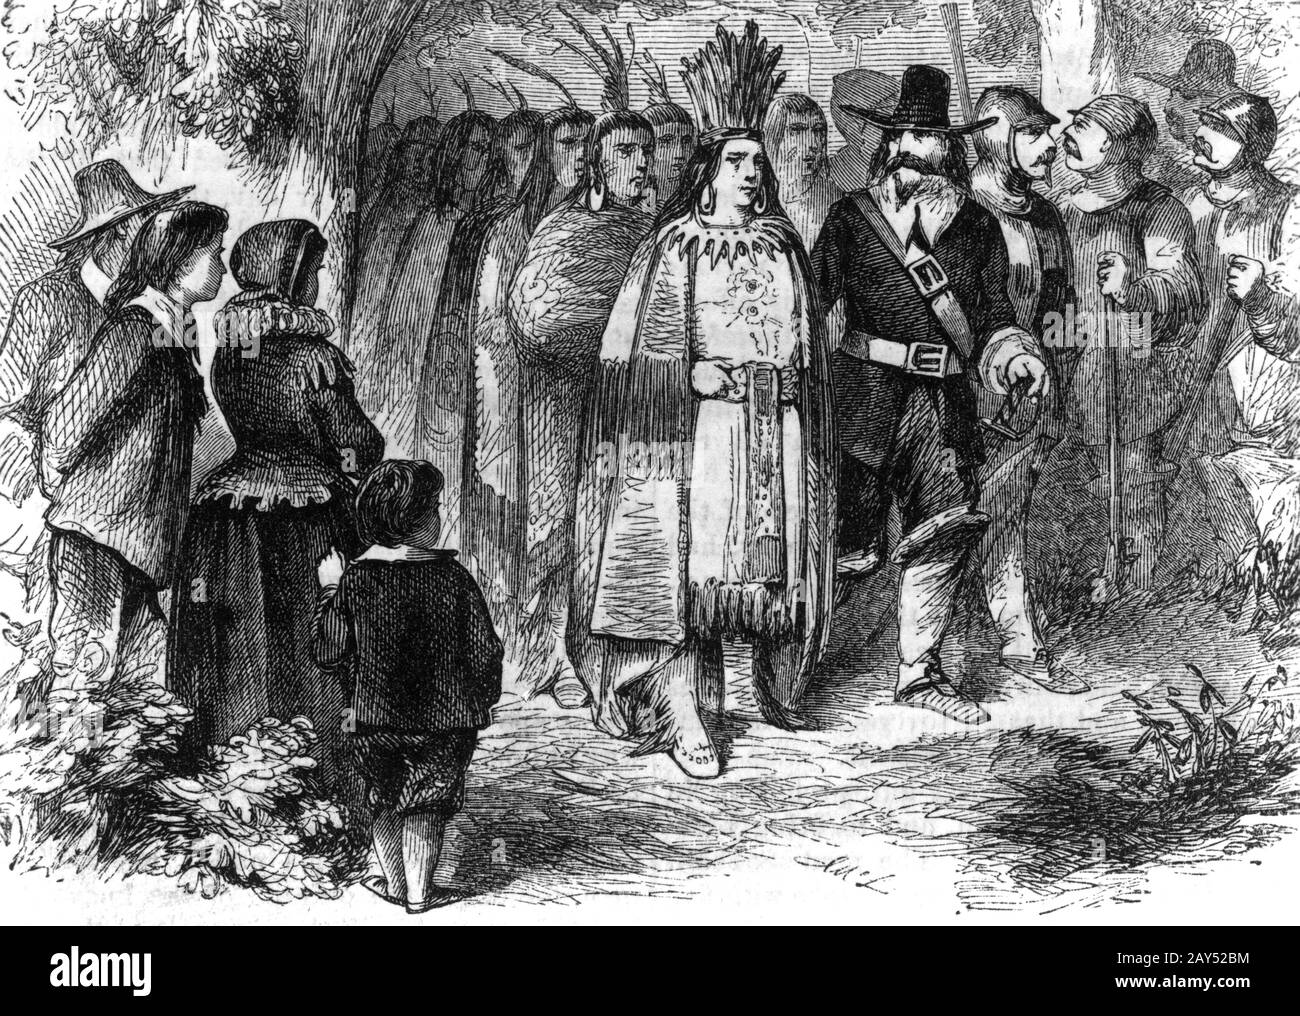 Massasoit, chef Wampanoag, et son guerrier visitent les pèlerins à Plymouth Colony, Circa 1621 Banque D'Images